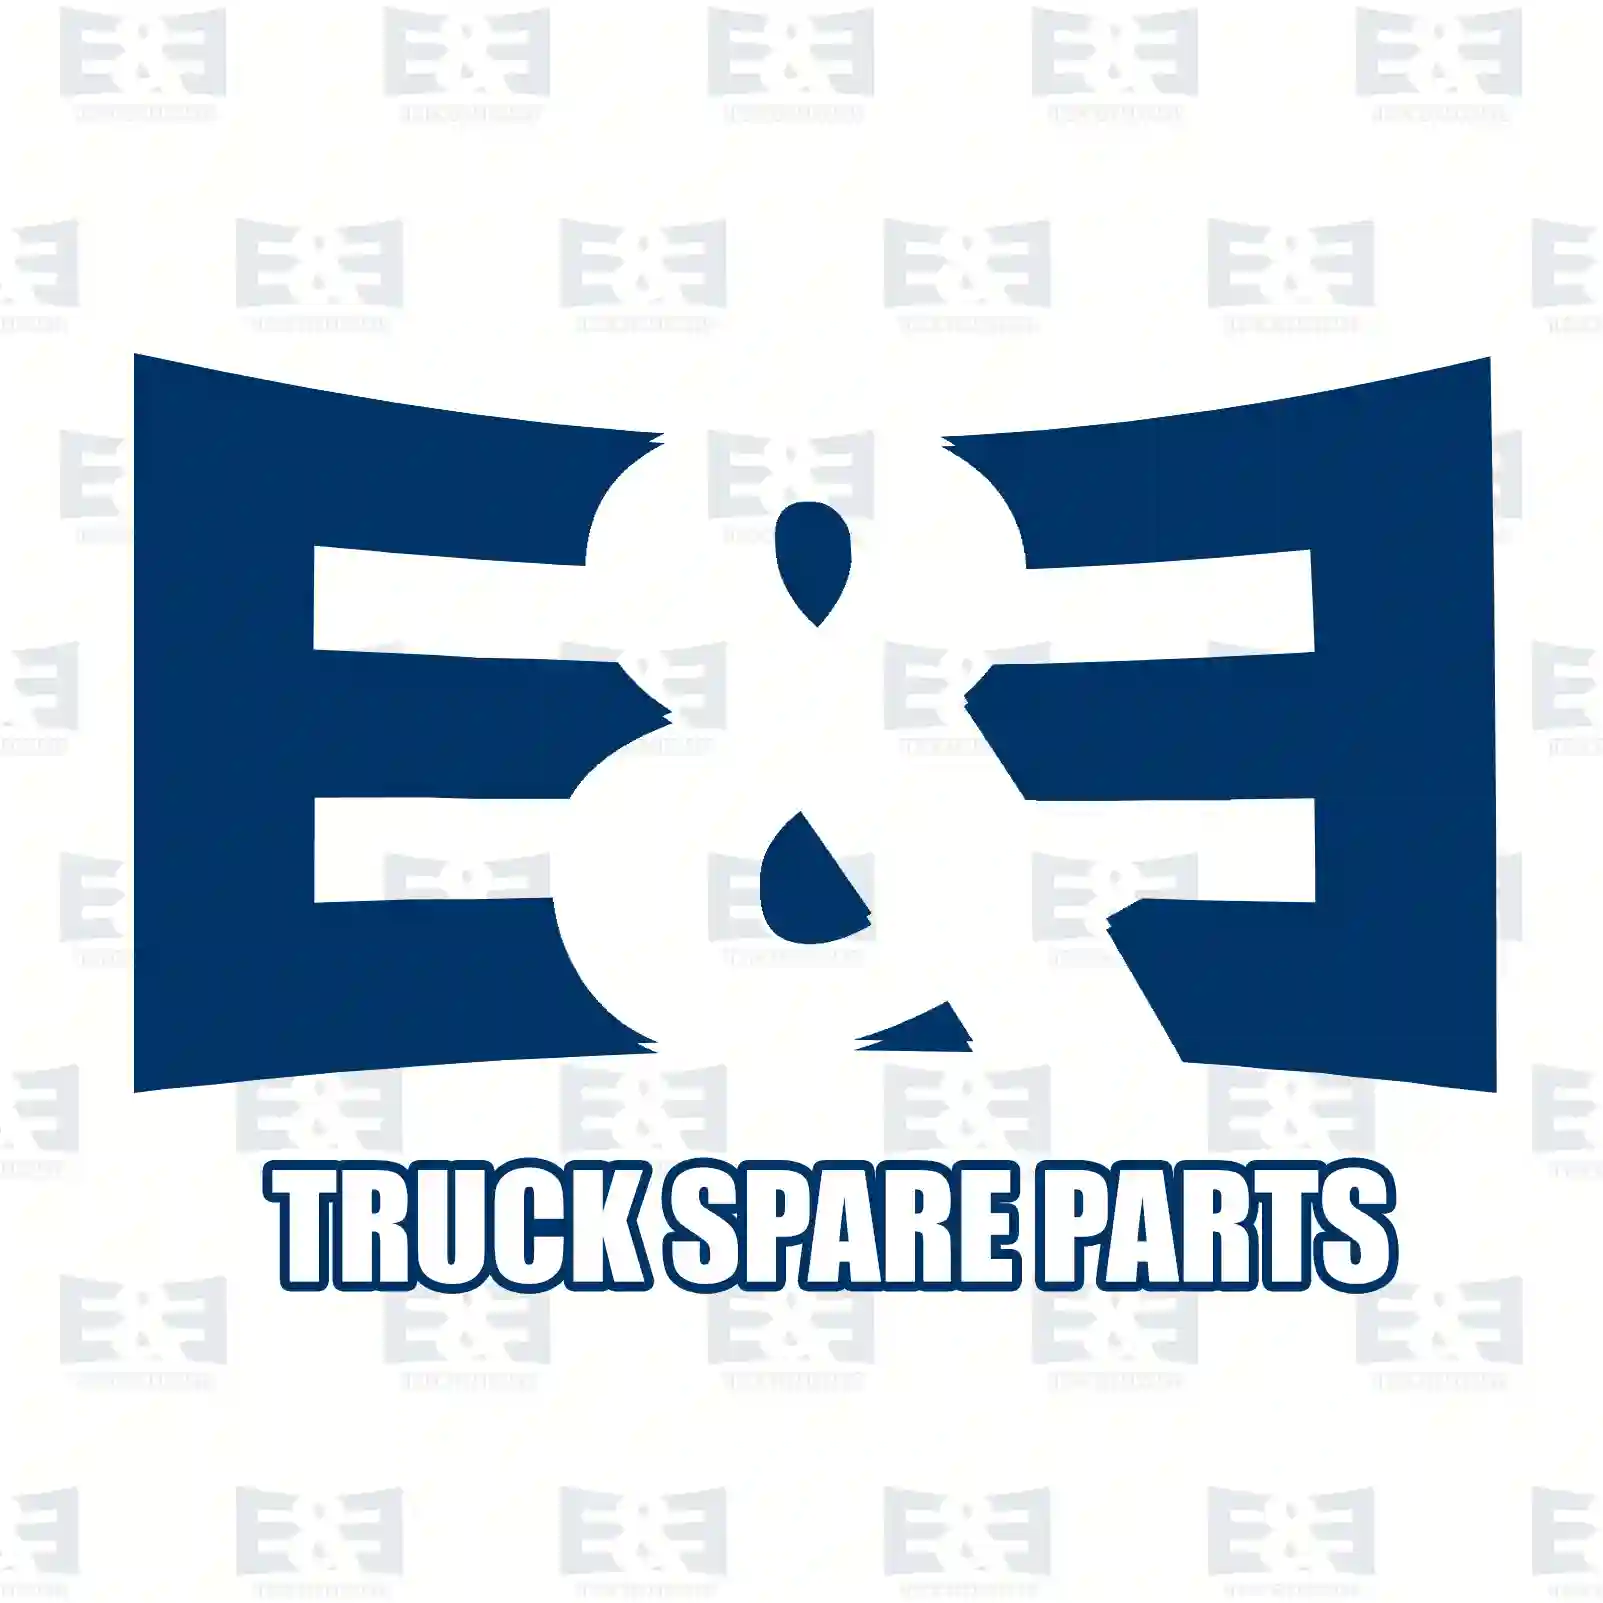 Air tank, 2E2294576, 20714522, , , , ||  2E2294576 E&E Truck Spare Parts | Truck Spare Parts, Auotomotive Spare Parts Air tank, 2E2294576, 20714522, , , , ||  2E2294576 E&E Truck Spare Parts | Truck Spare Parts, Auotomotive Spare Parts